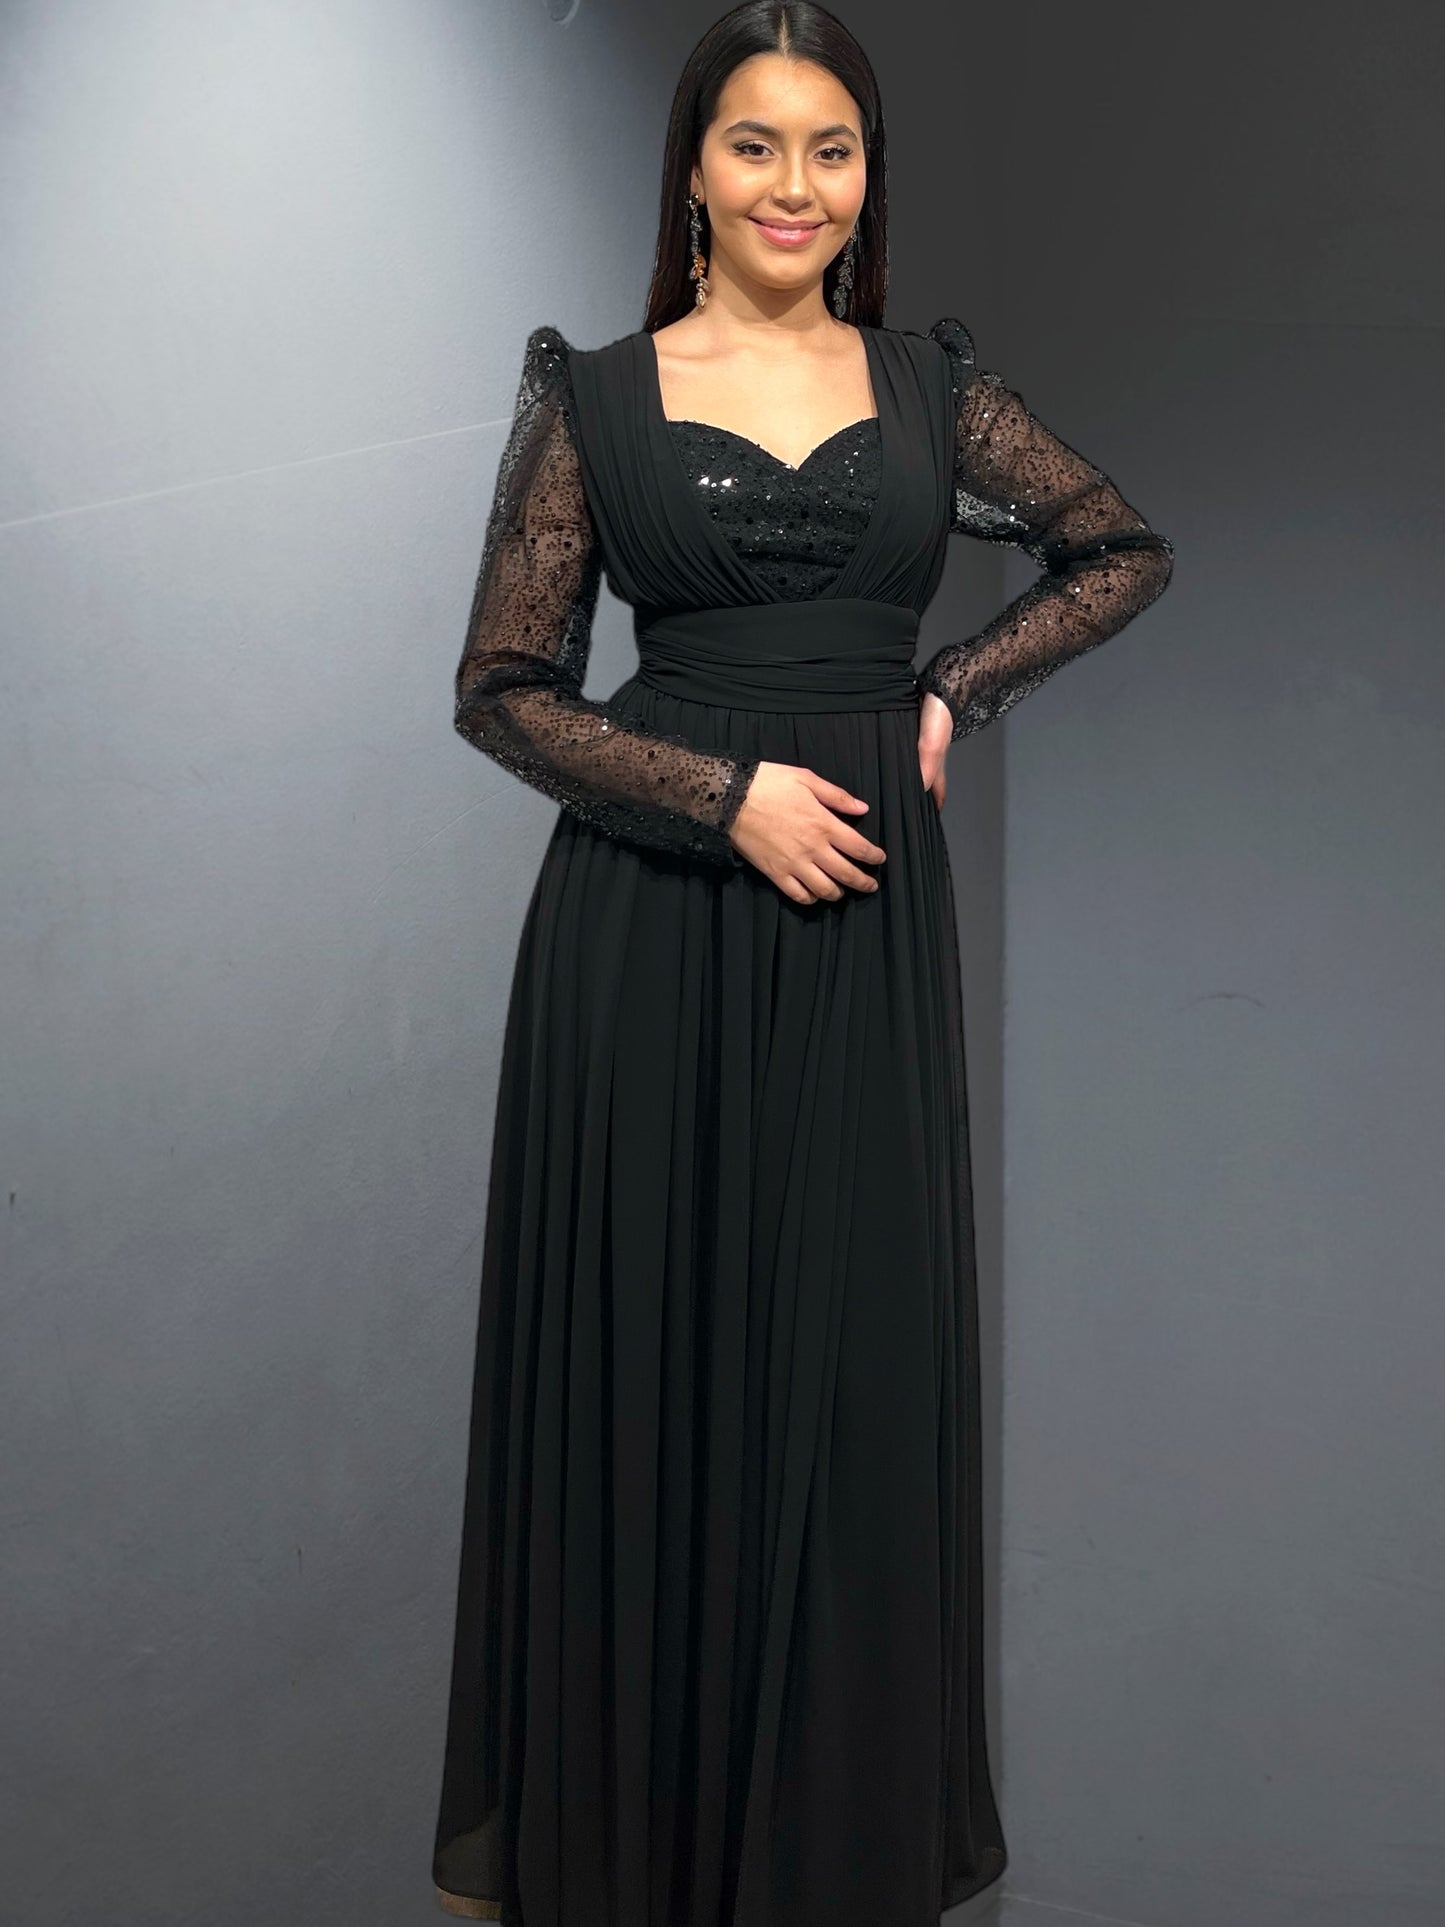 l'élégance avec la robe "Nice", une création emblématique d'Amir Couture - AmirCouture 